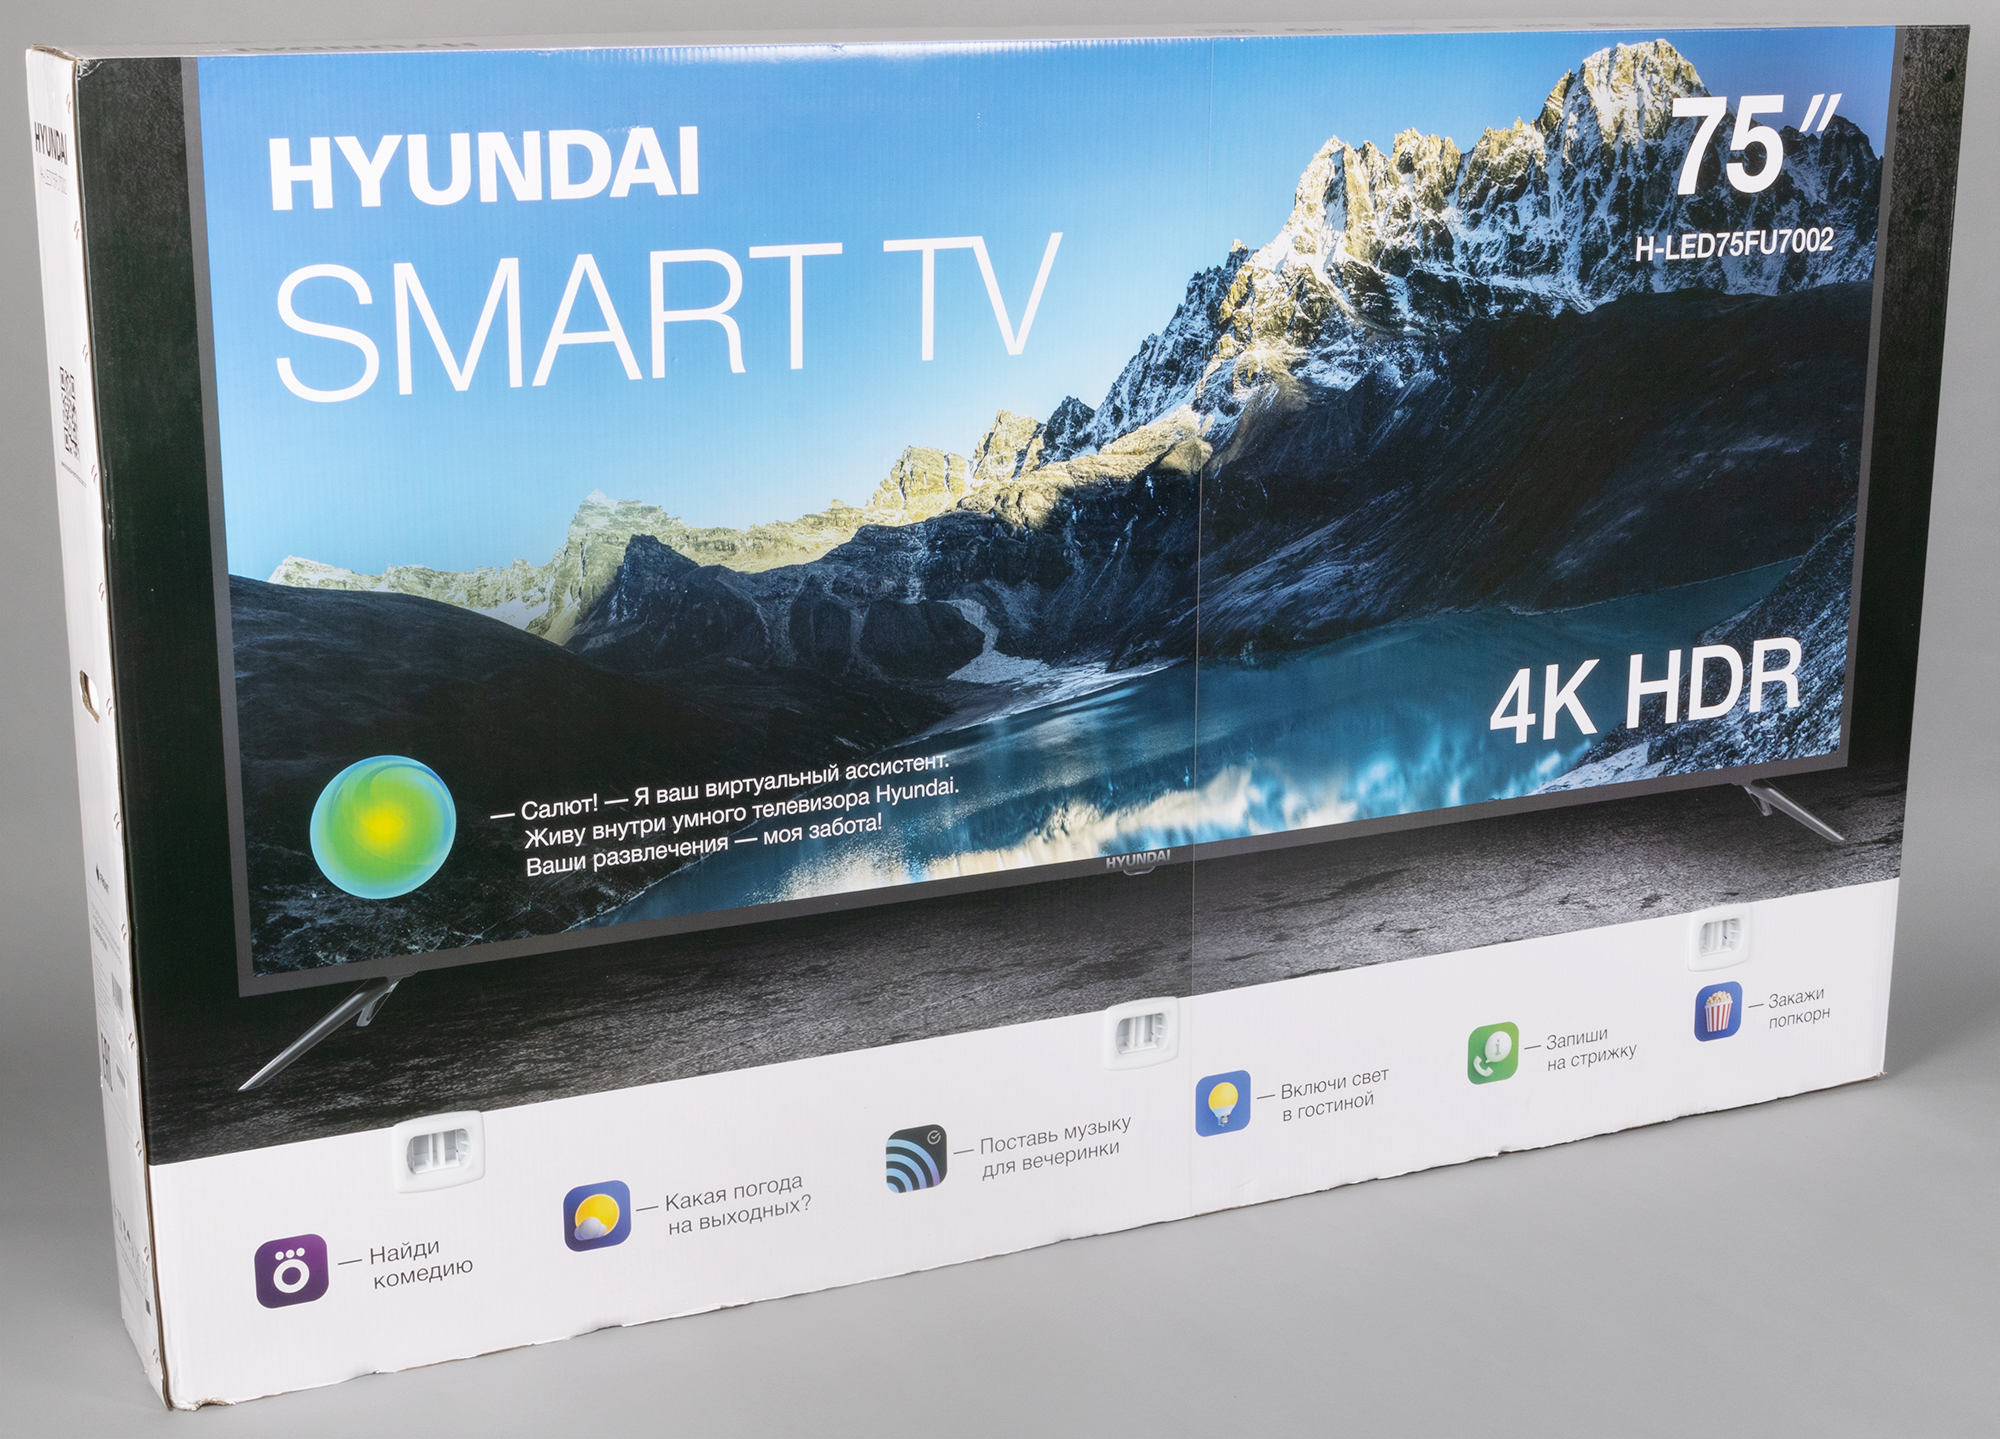 Led43bu7006 телевизор hyundai. Hyundai h-led75fu7002 led. Hyundai h-led43bu7003. Телевизор 75 дюймов Хундай.